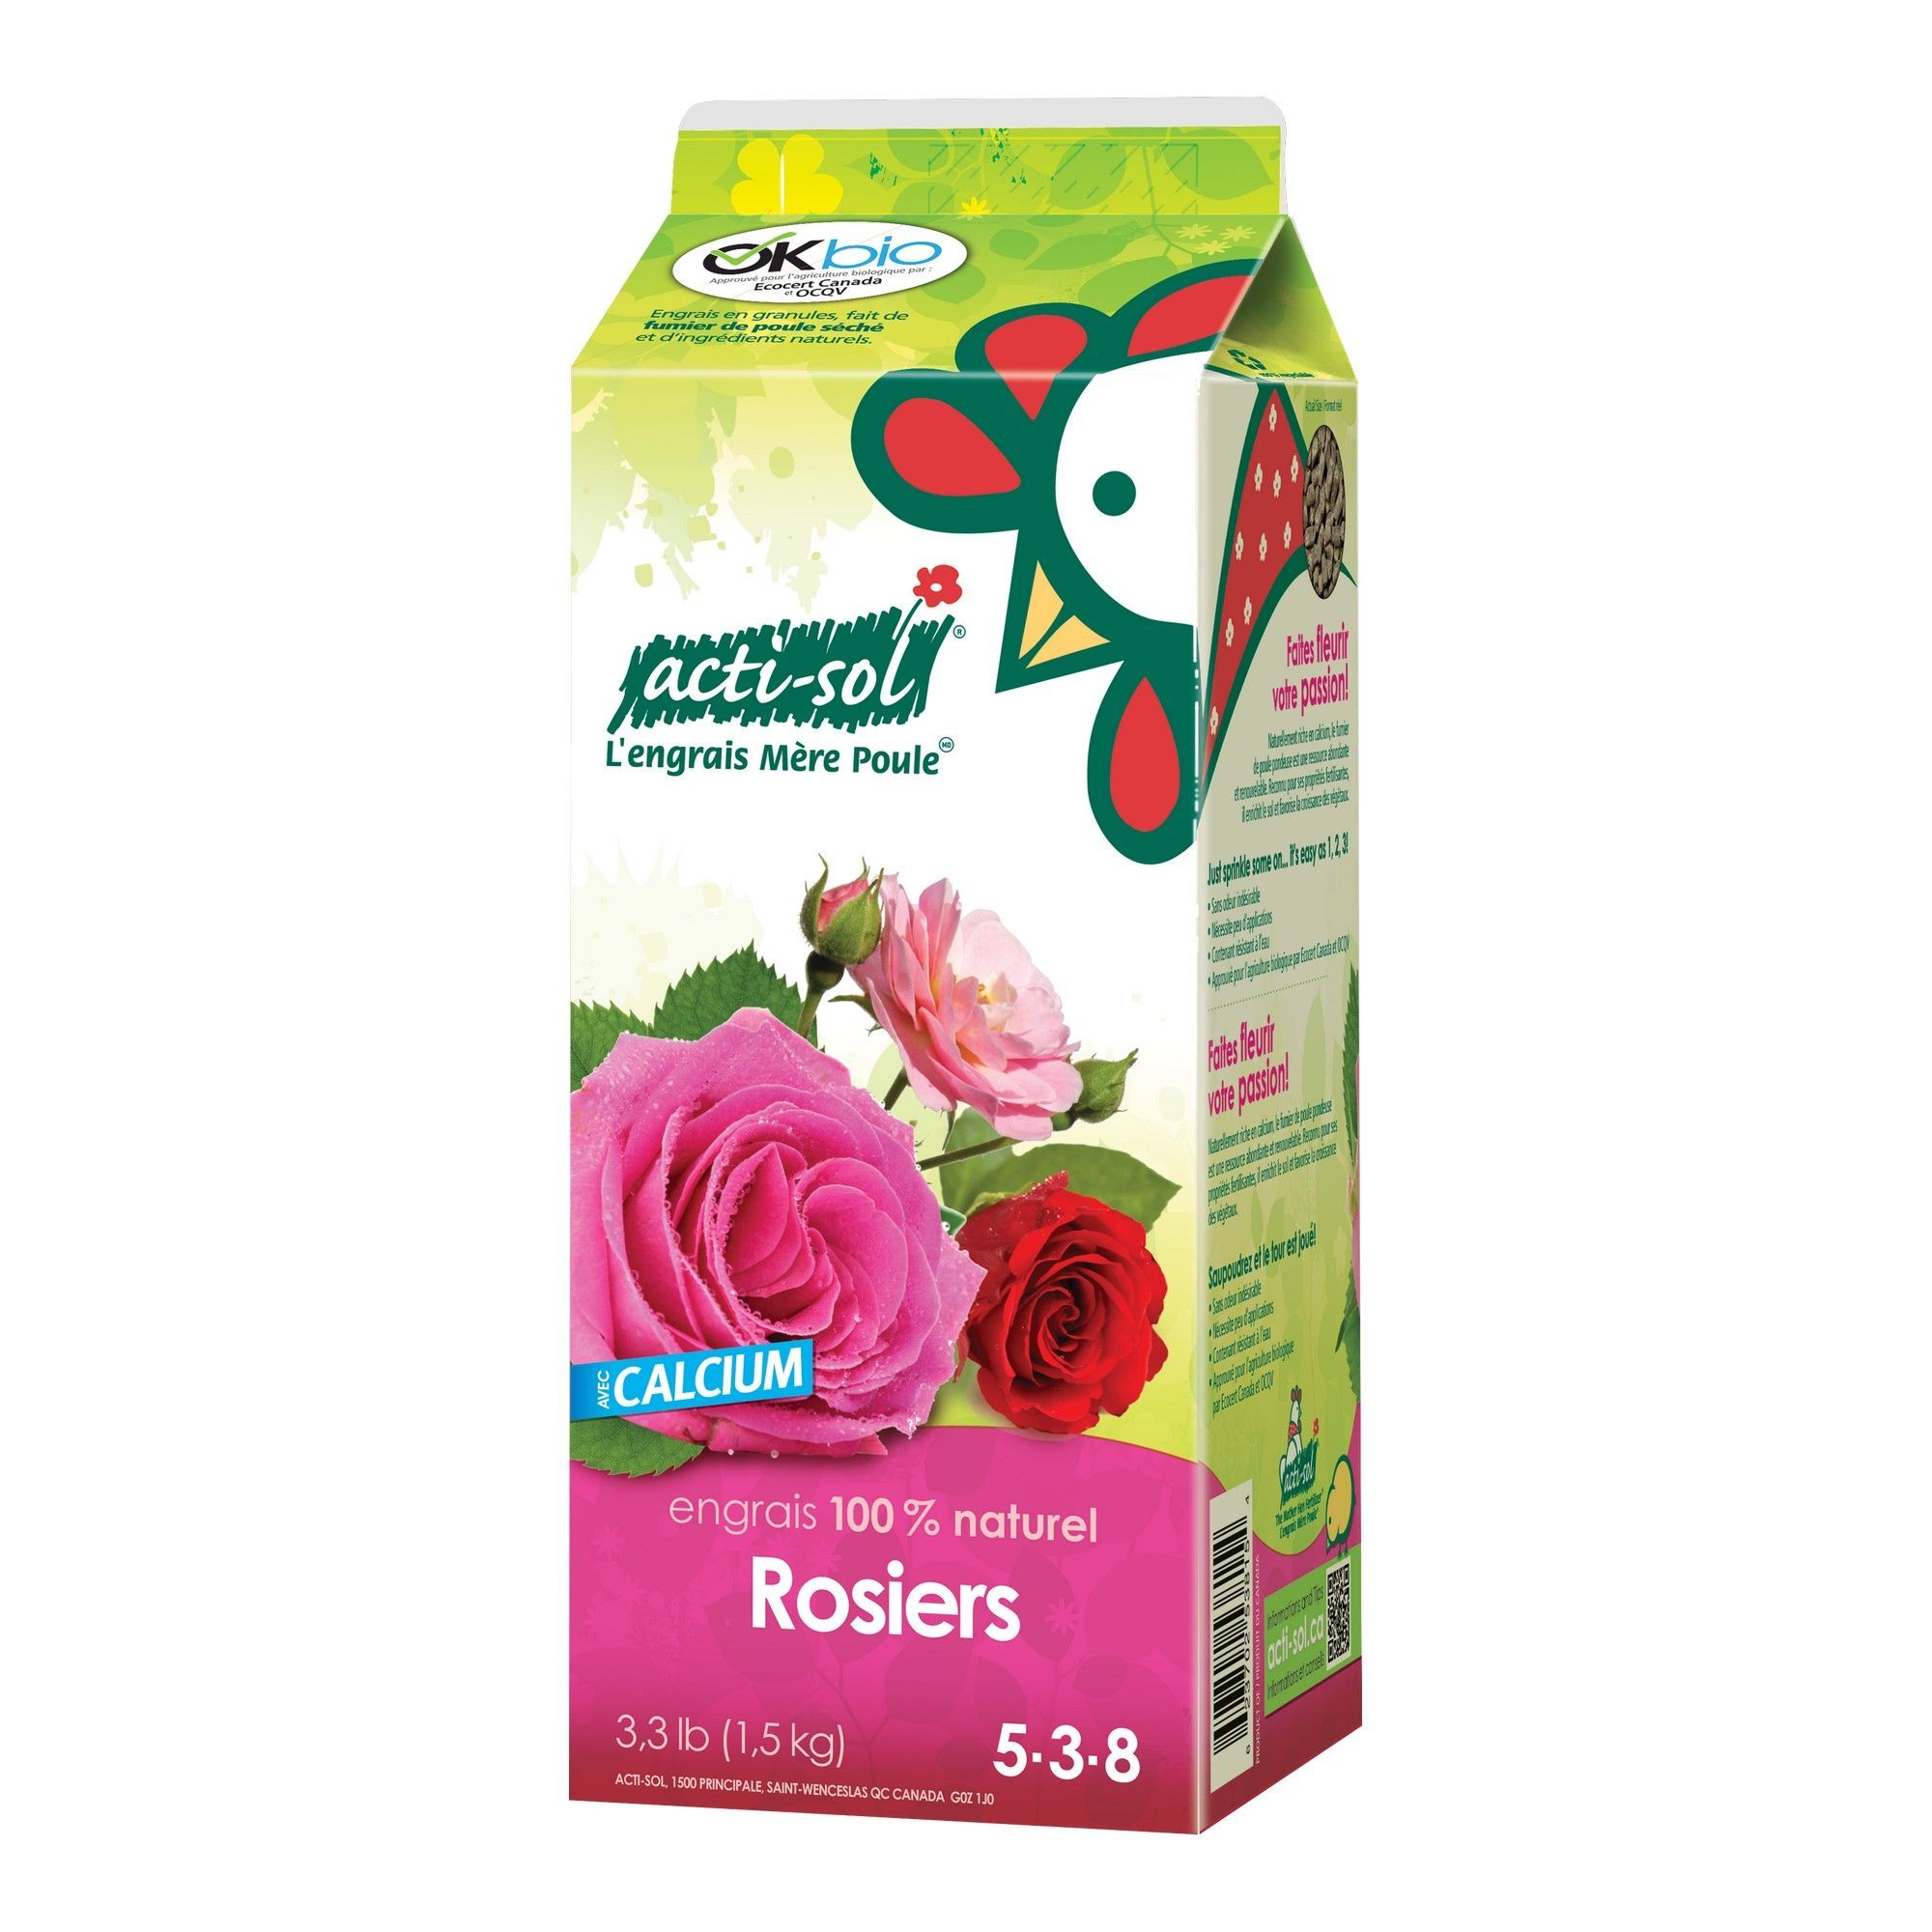 Rose bushes fertilizer 5-3-8 - 1.5 kg from ACTI-SOL